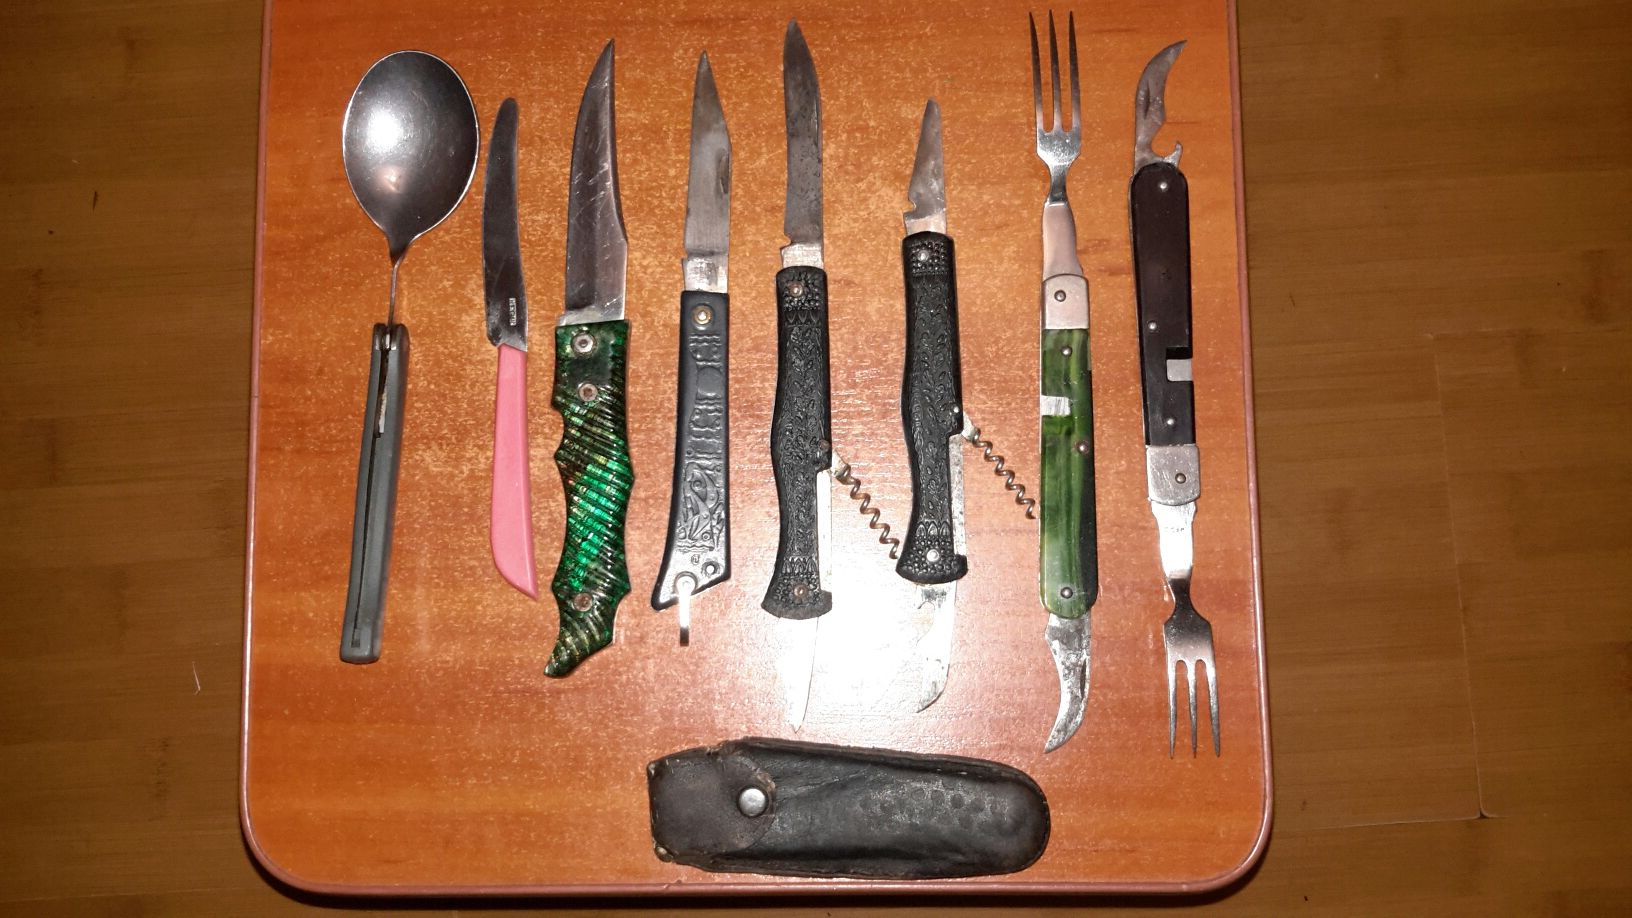 Набор:лопата,топорик,ножовка,набор ножей